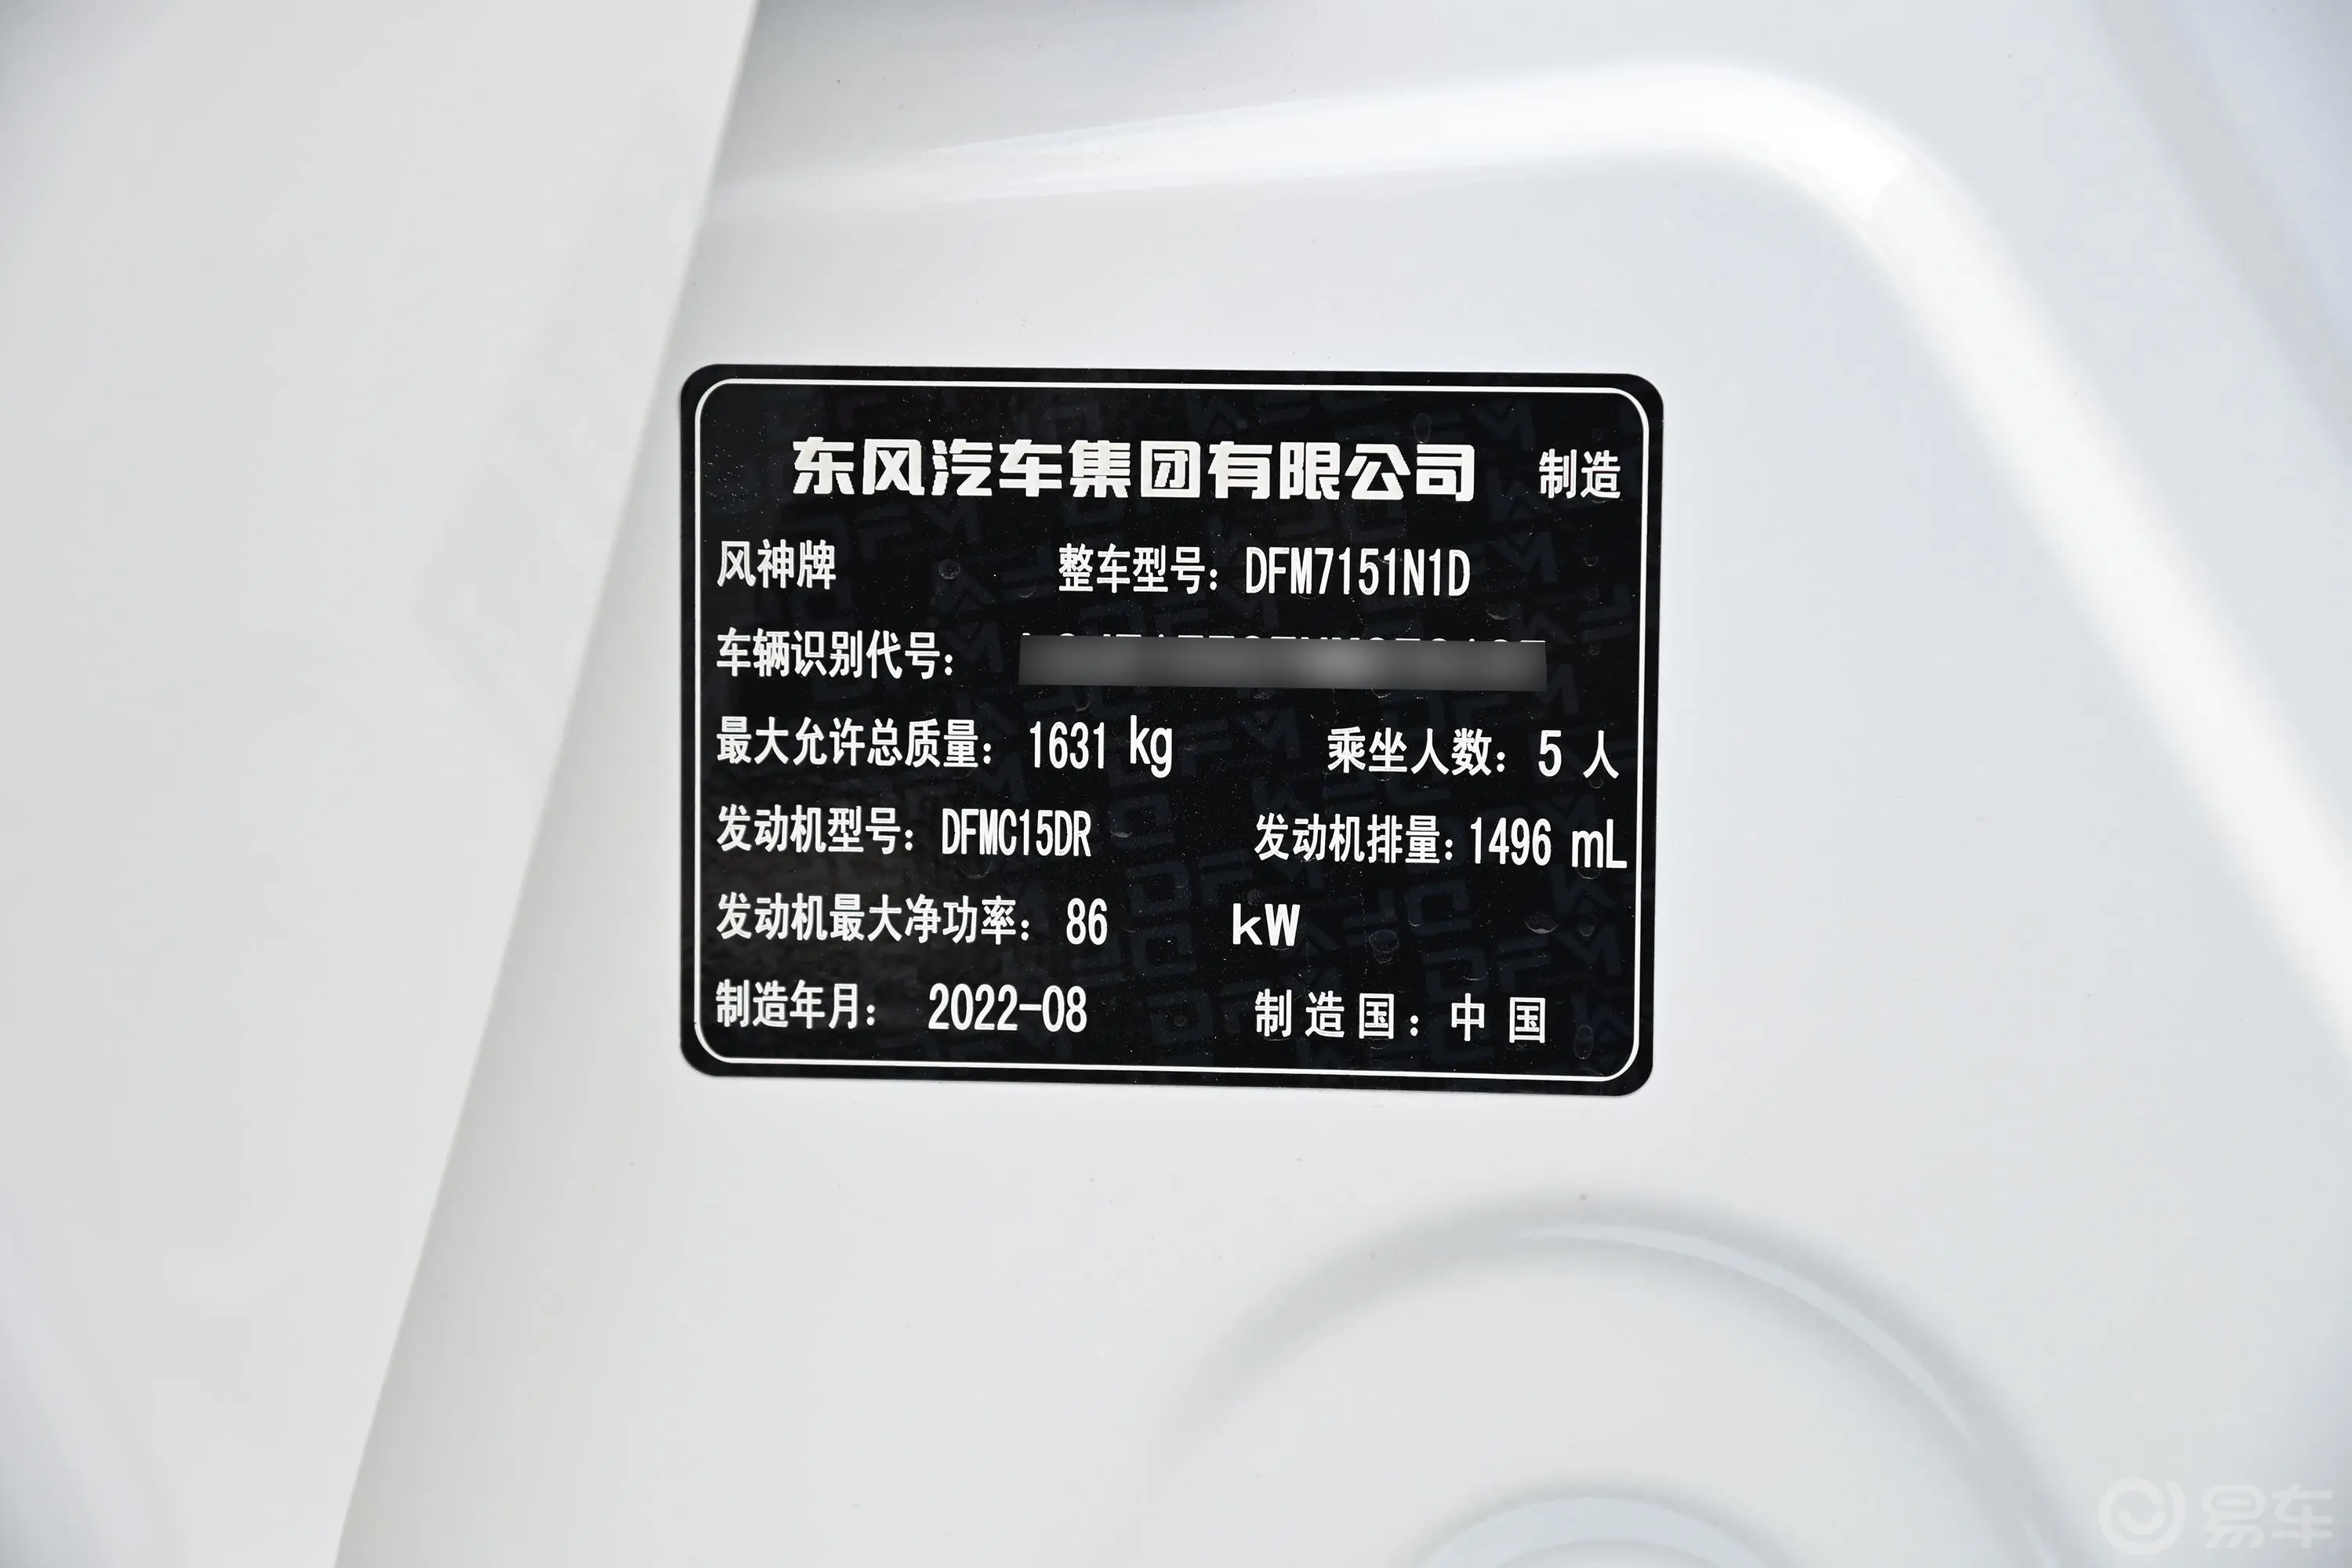 奕炫马赫版 1.5L 双离合追影版车辆信息铭牌